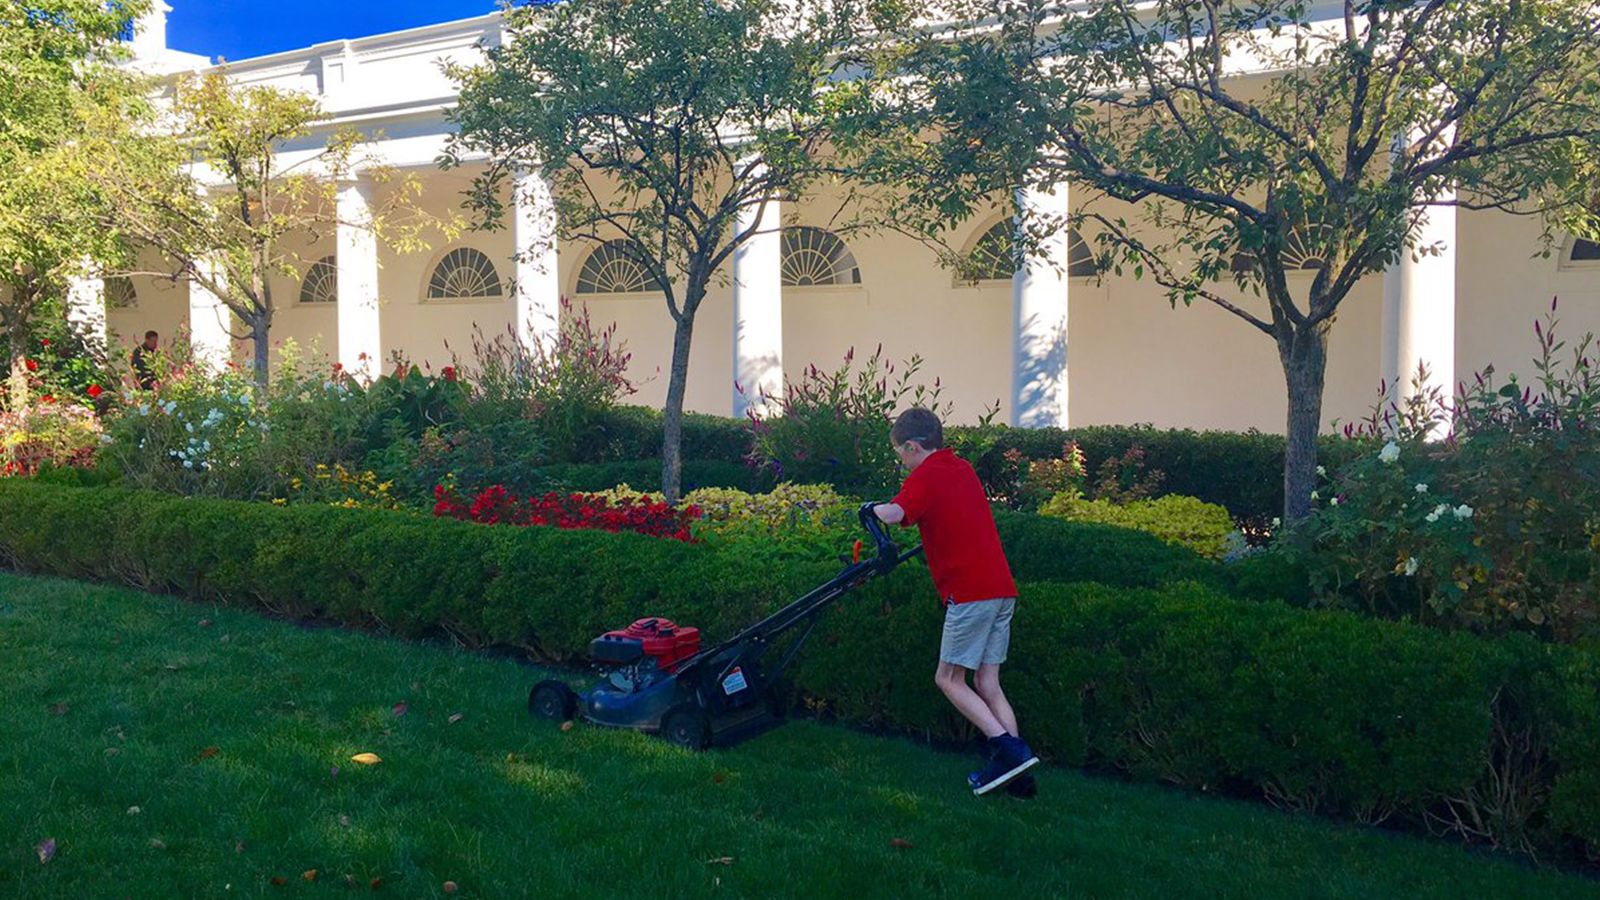 Boy fulfills wish to mow White House lawn